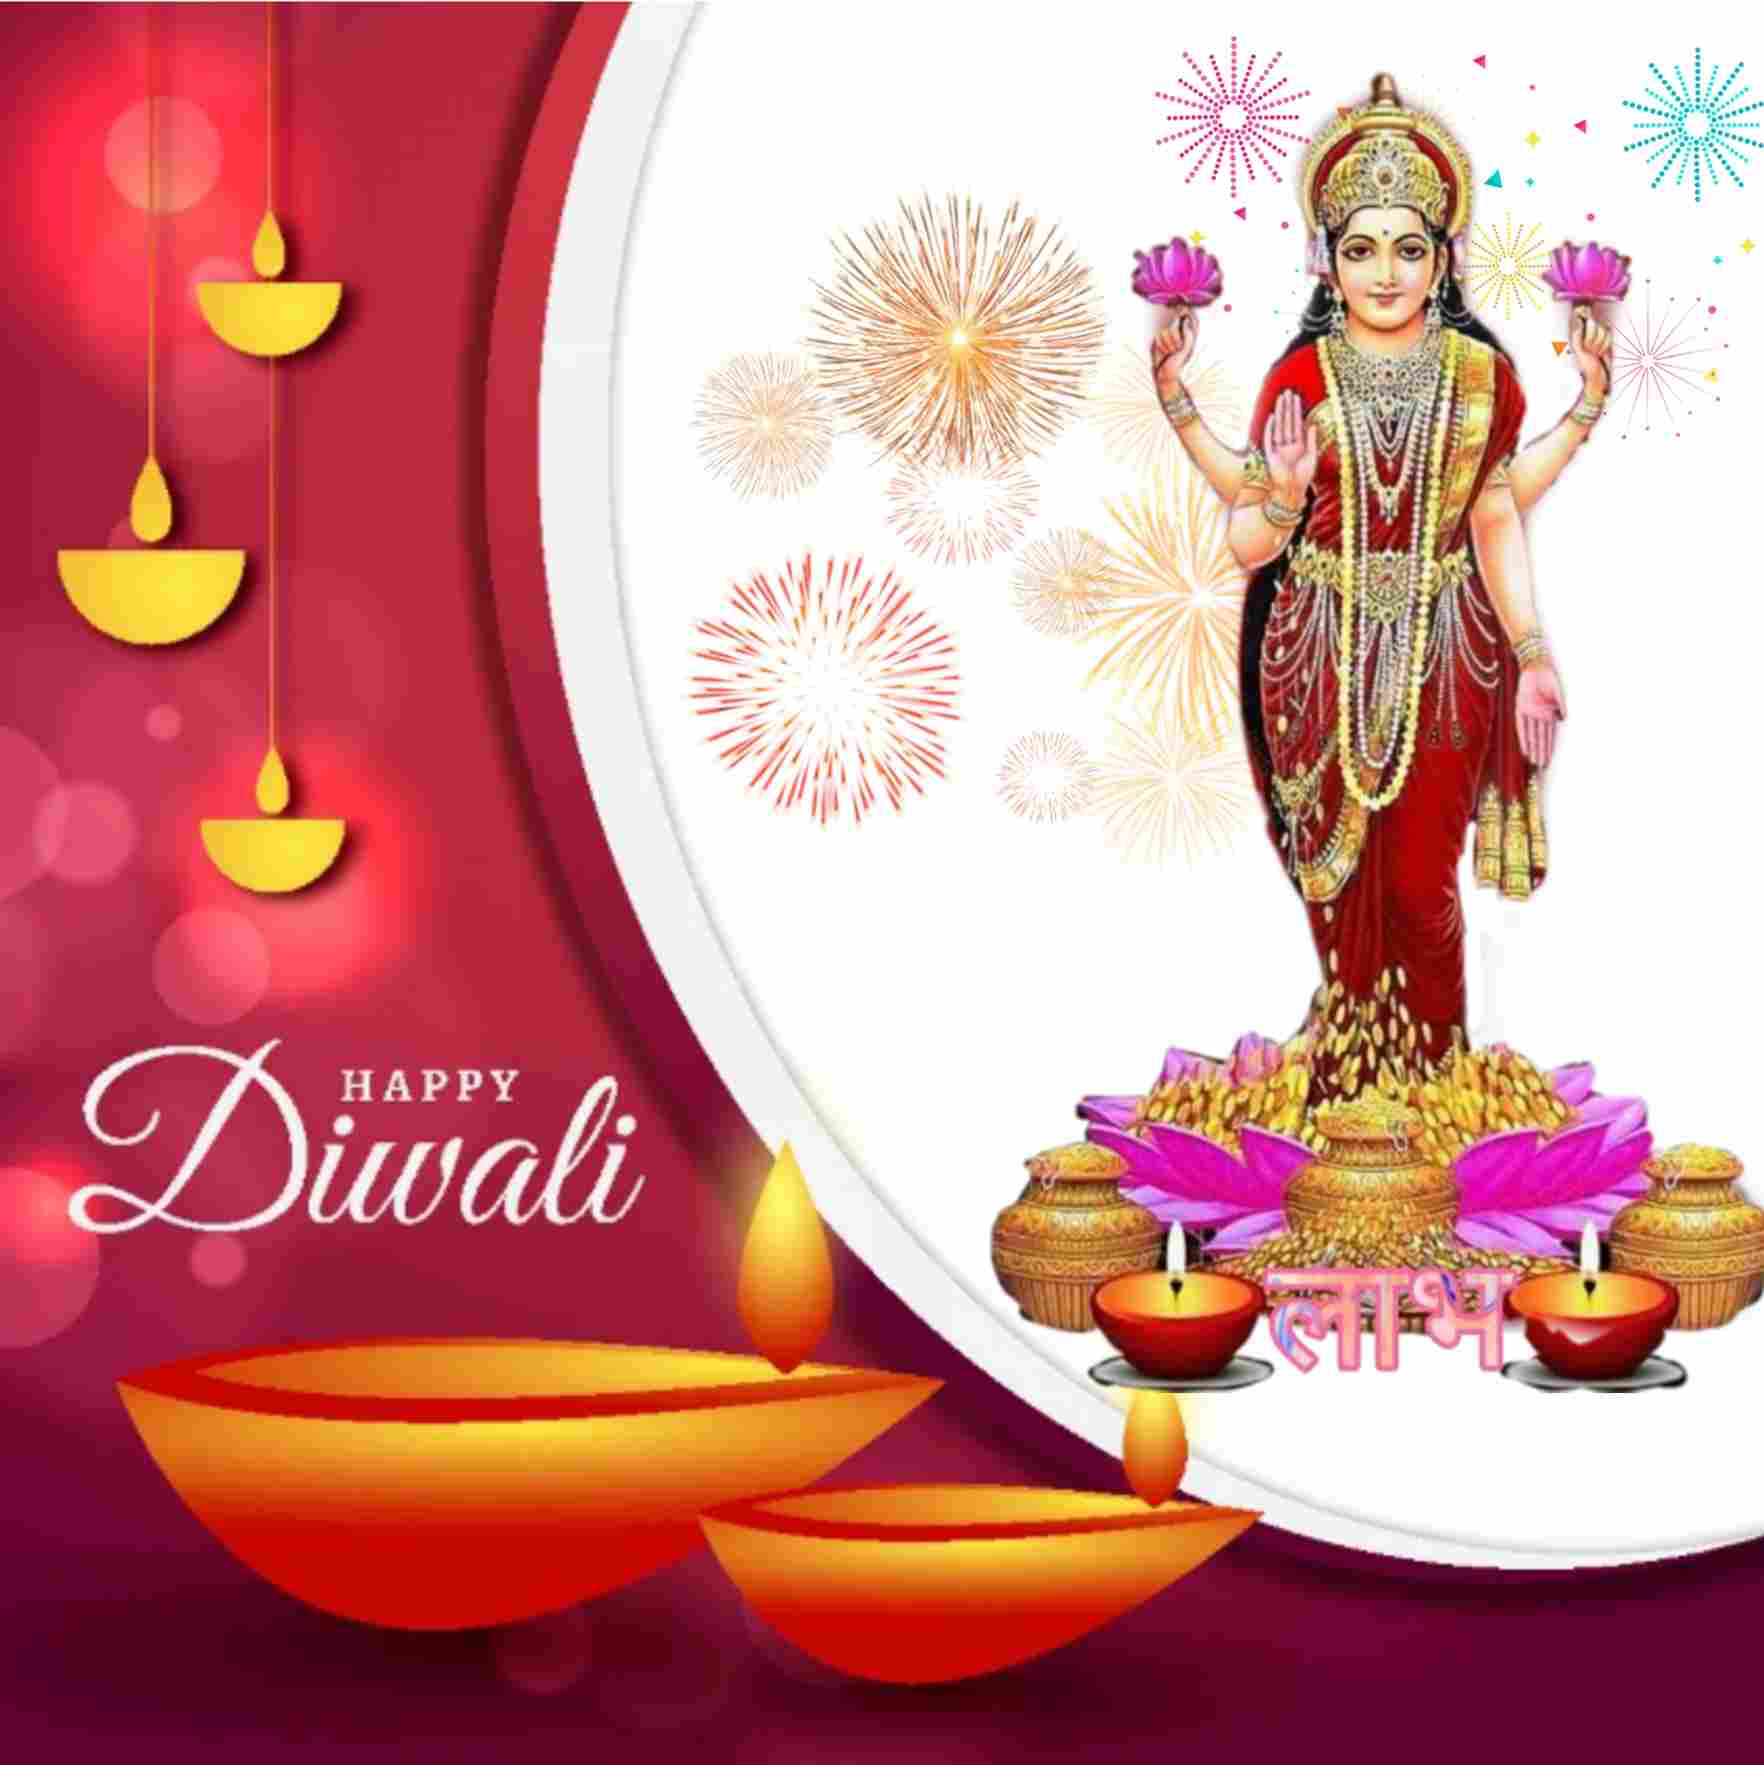 happy Diwali wishes image